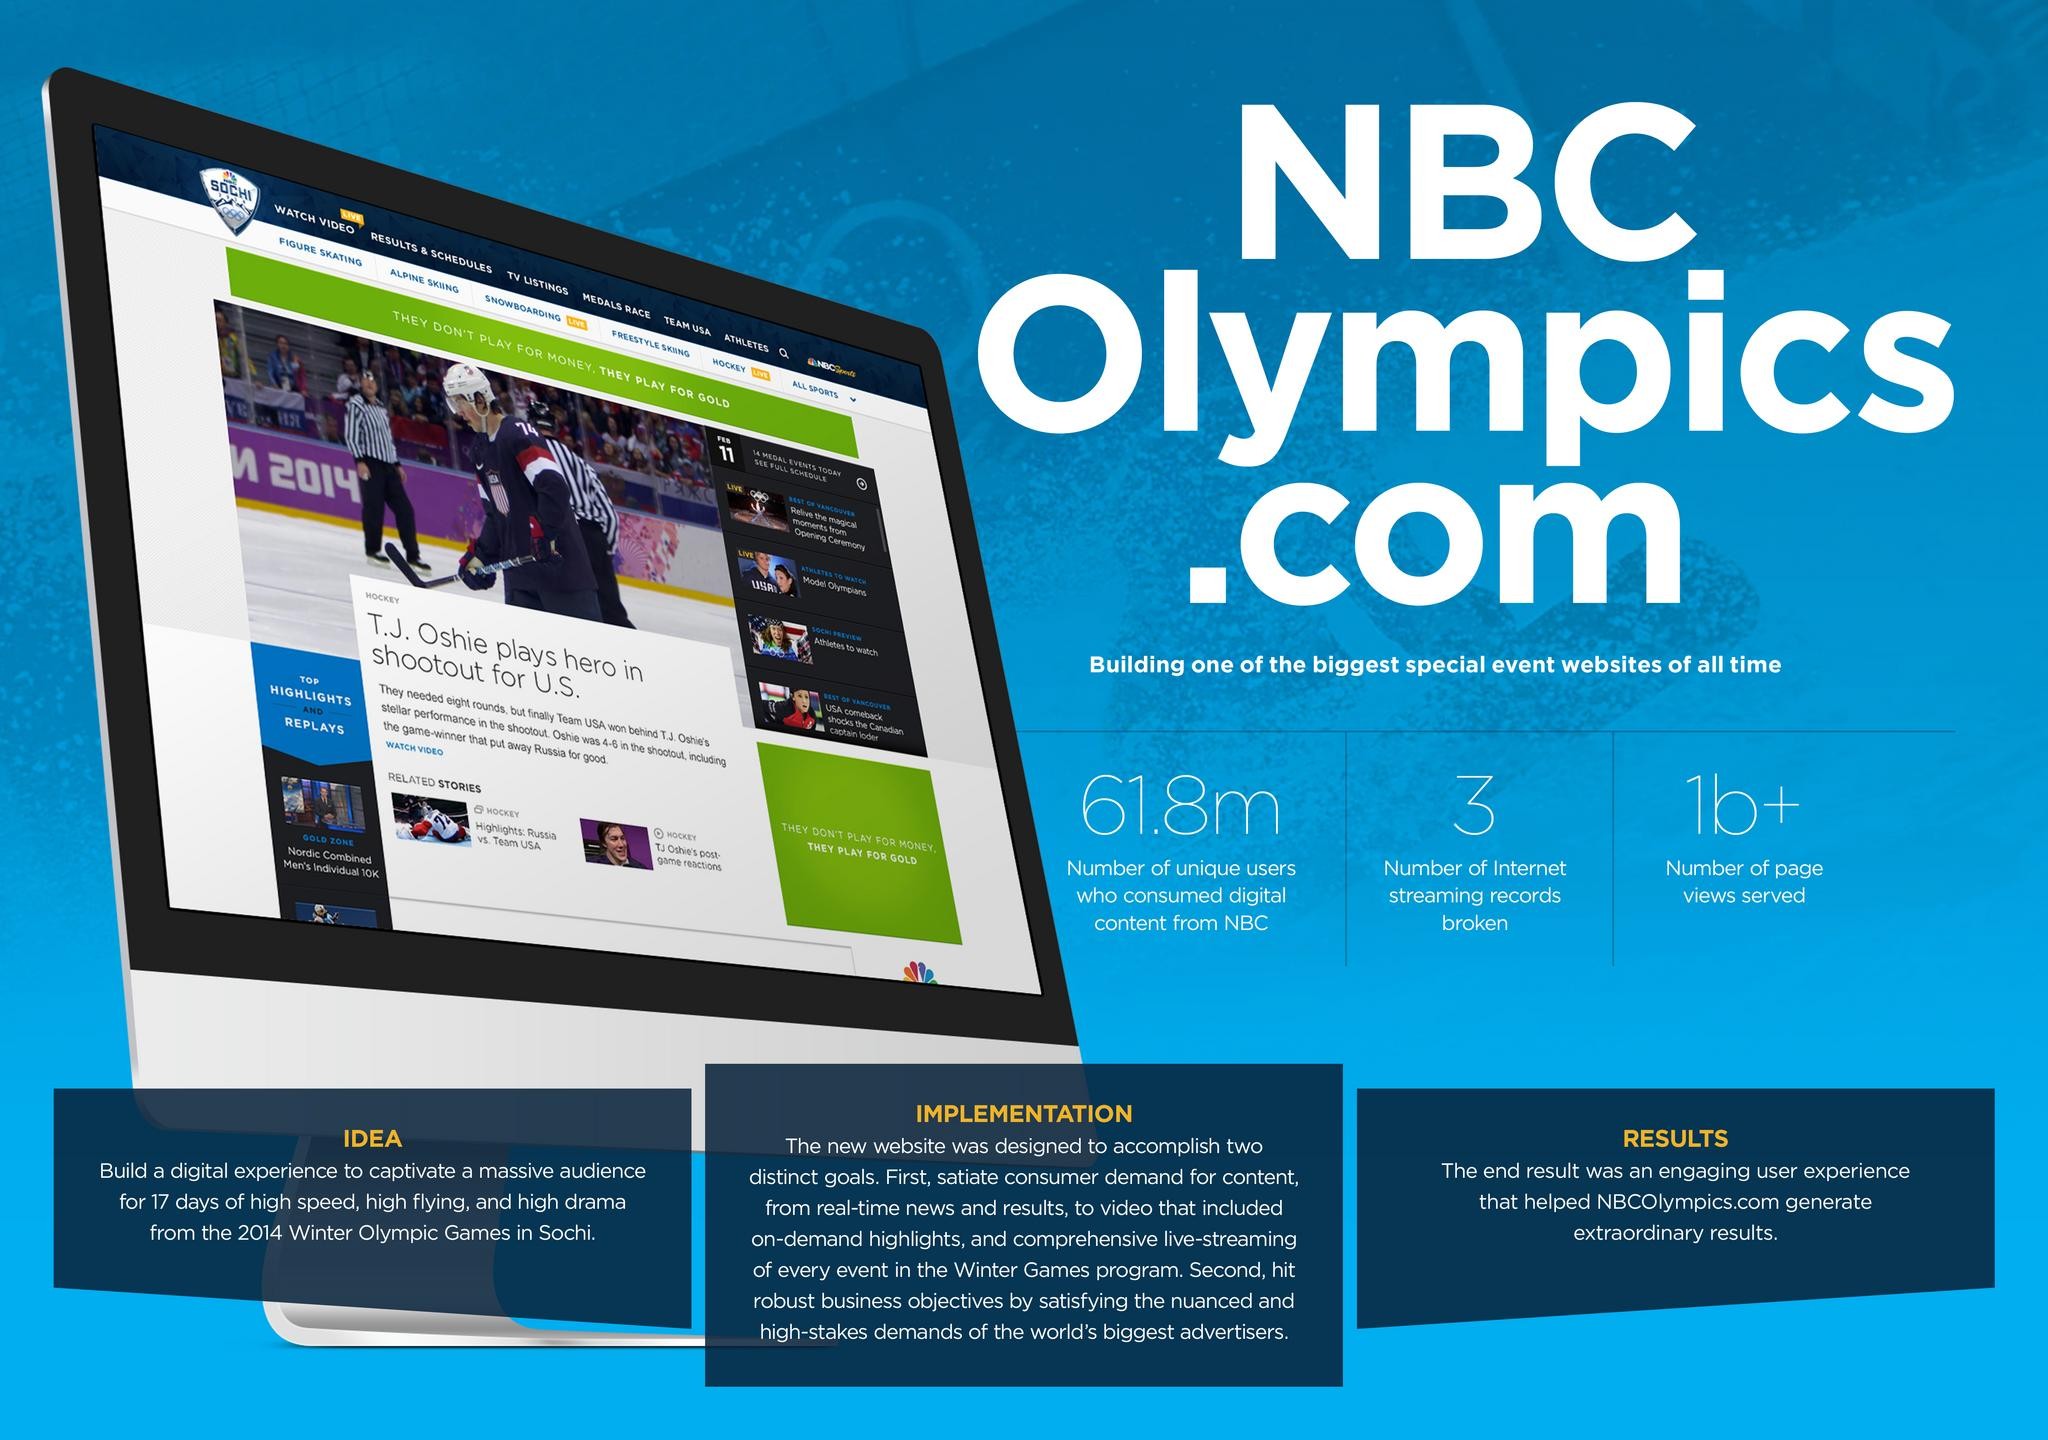 NBCOLYMPICS.COM